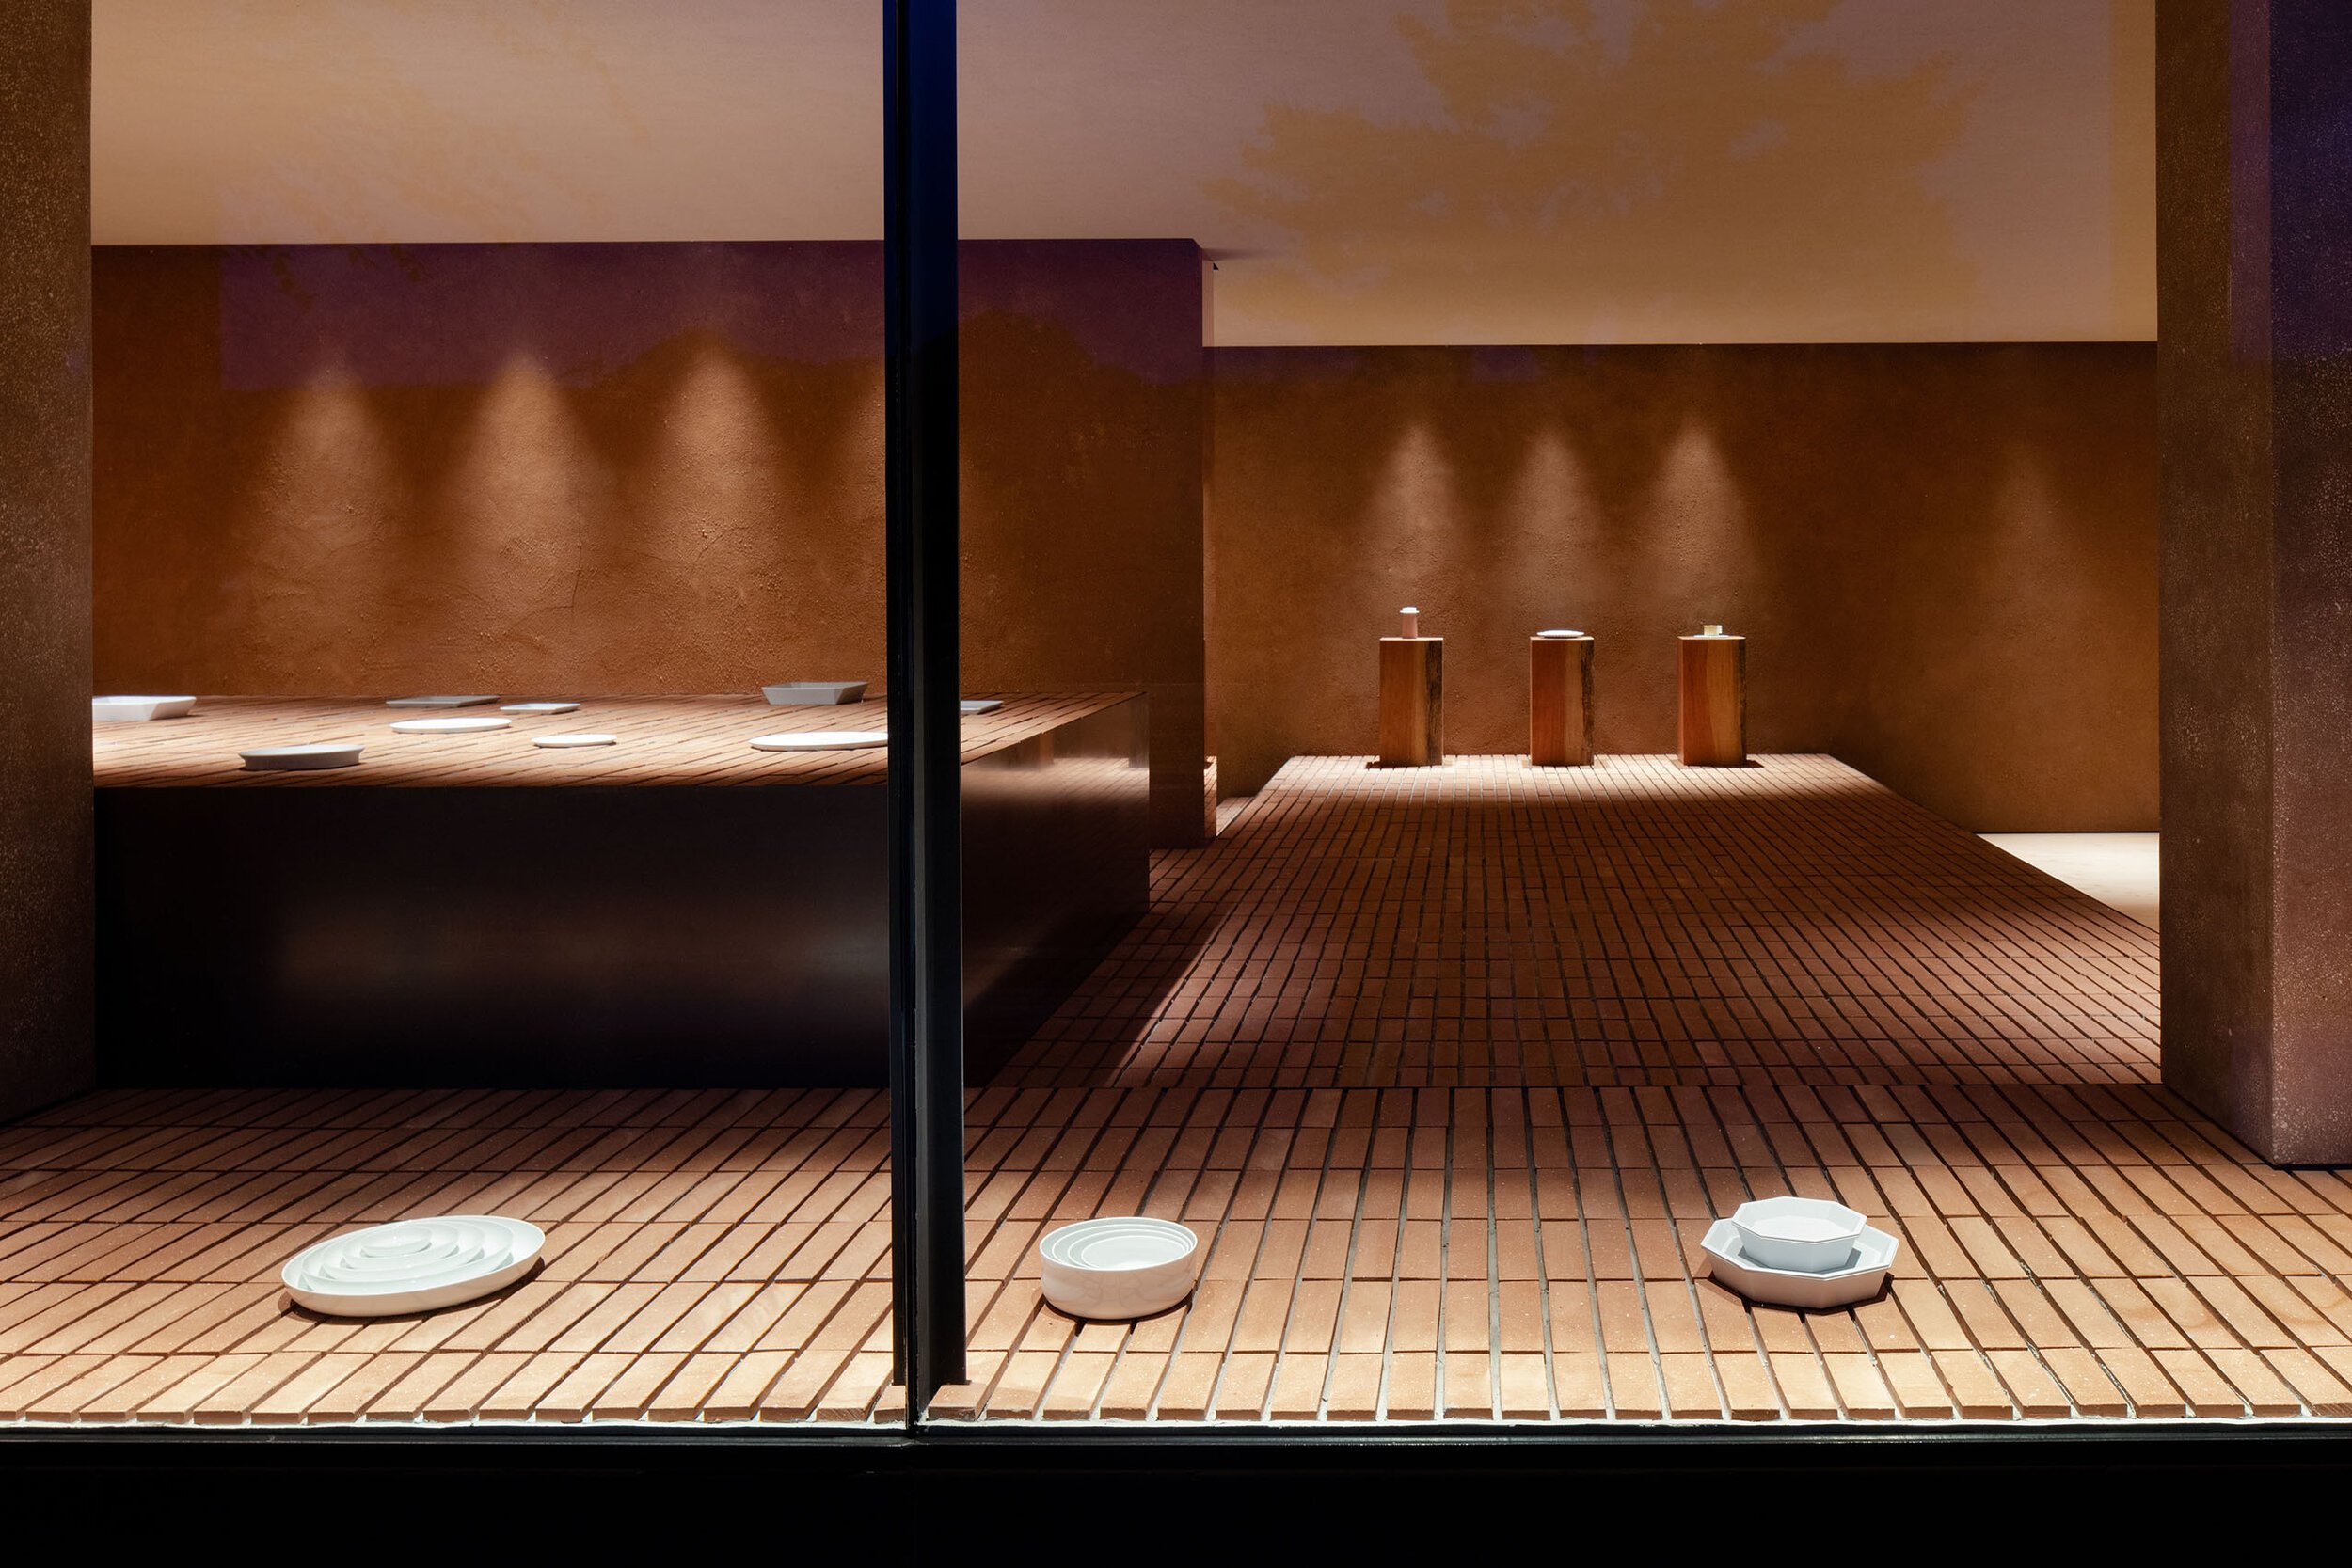  TERUHIRO YANAGIHARA STUDIOの柳原照弘がデザインした1616/arita japan 有田ショールームの開口部まわり 